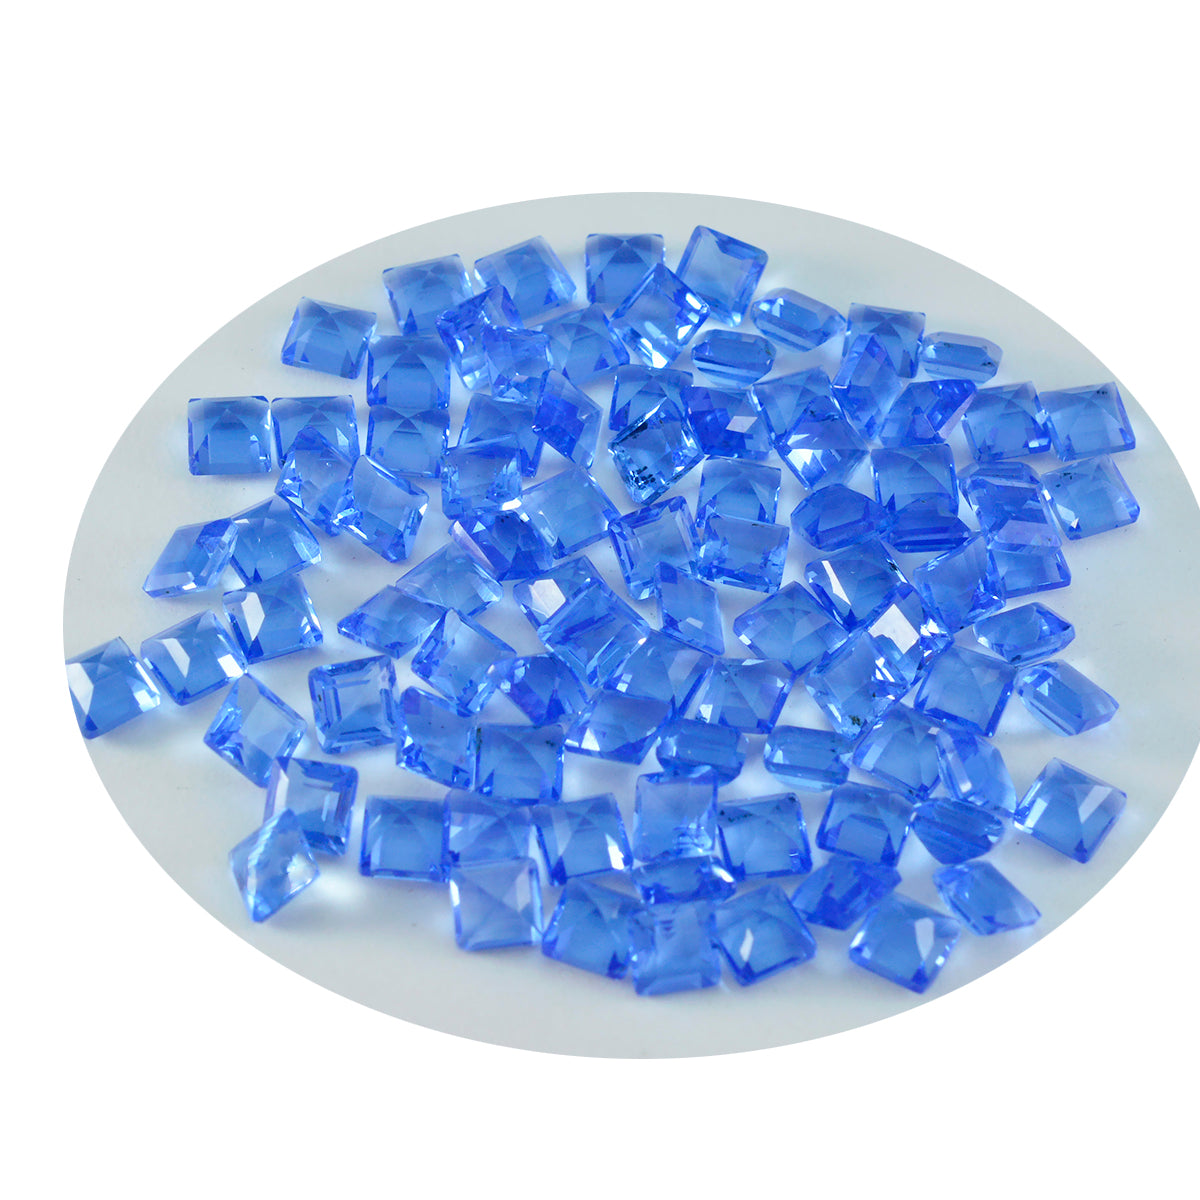 riyogems 1шт синий сапфир cz ограненный 3x3 мм квадратной формы +1 качество отдельные драгоценные камни